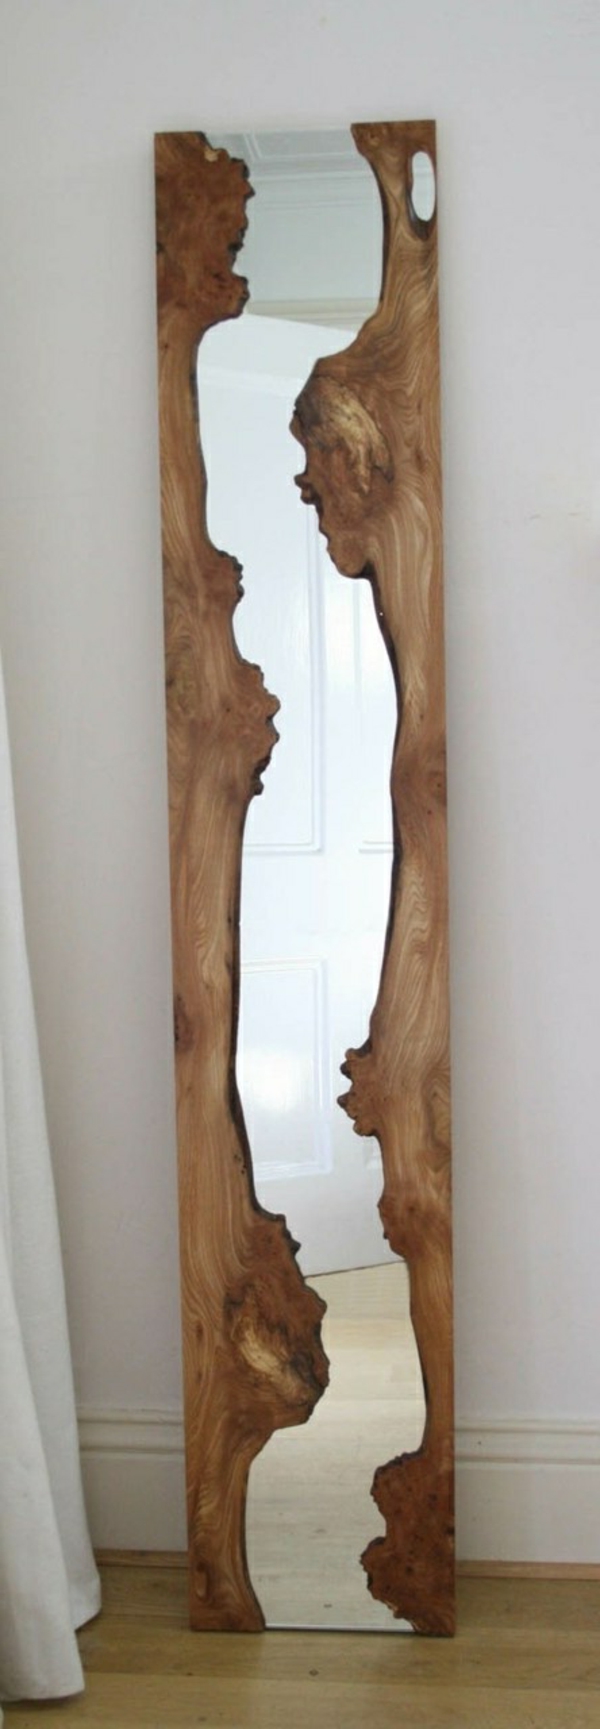 klasszikus megjelenésű driftwood tükör